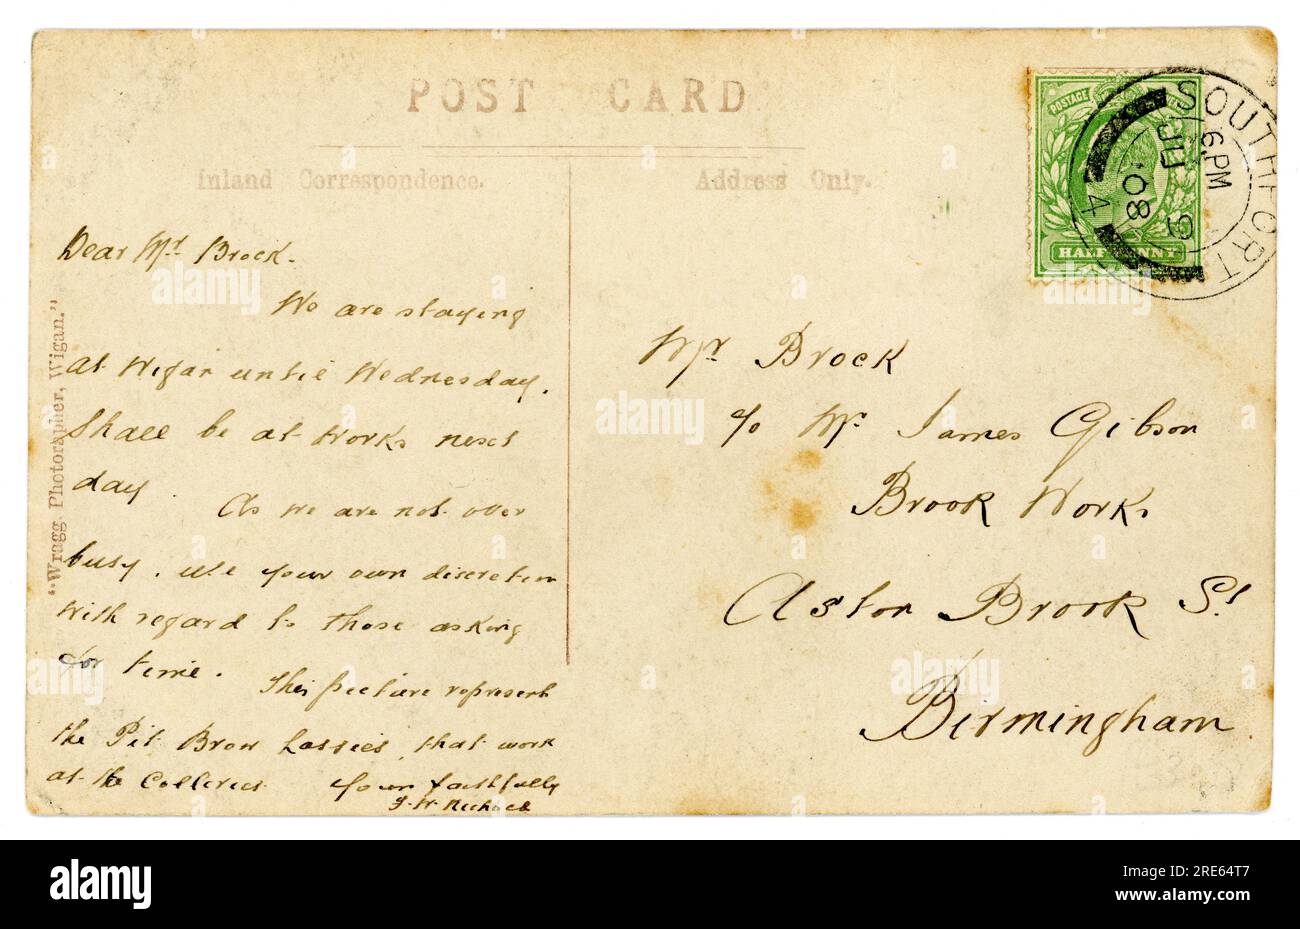 Umkehrbuchung der originalen Postkarte aus der Edwardianischen Ära, veröffentlicht am 9. 1908. Juni. Die Briefmarke ist ein grüner, halber Penny, King Edward VII. Stempel. Stockfoto